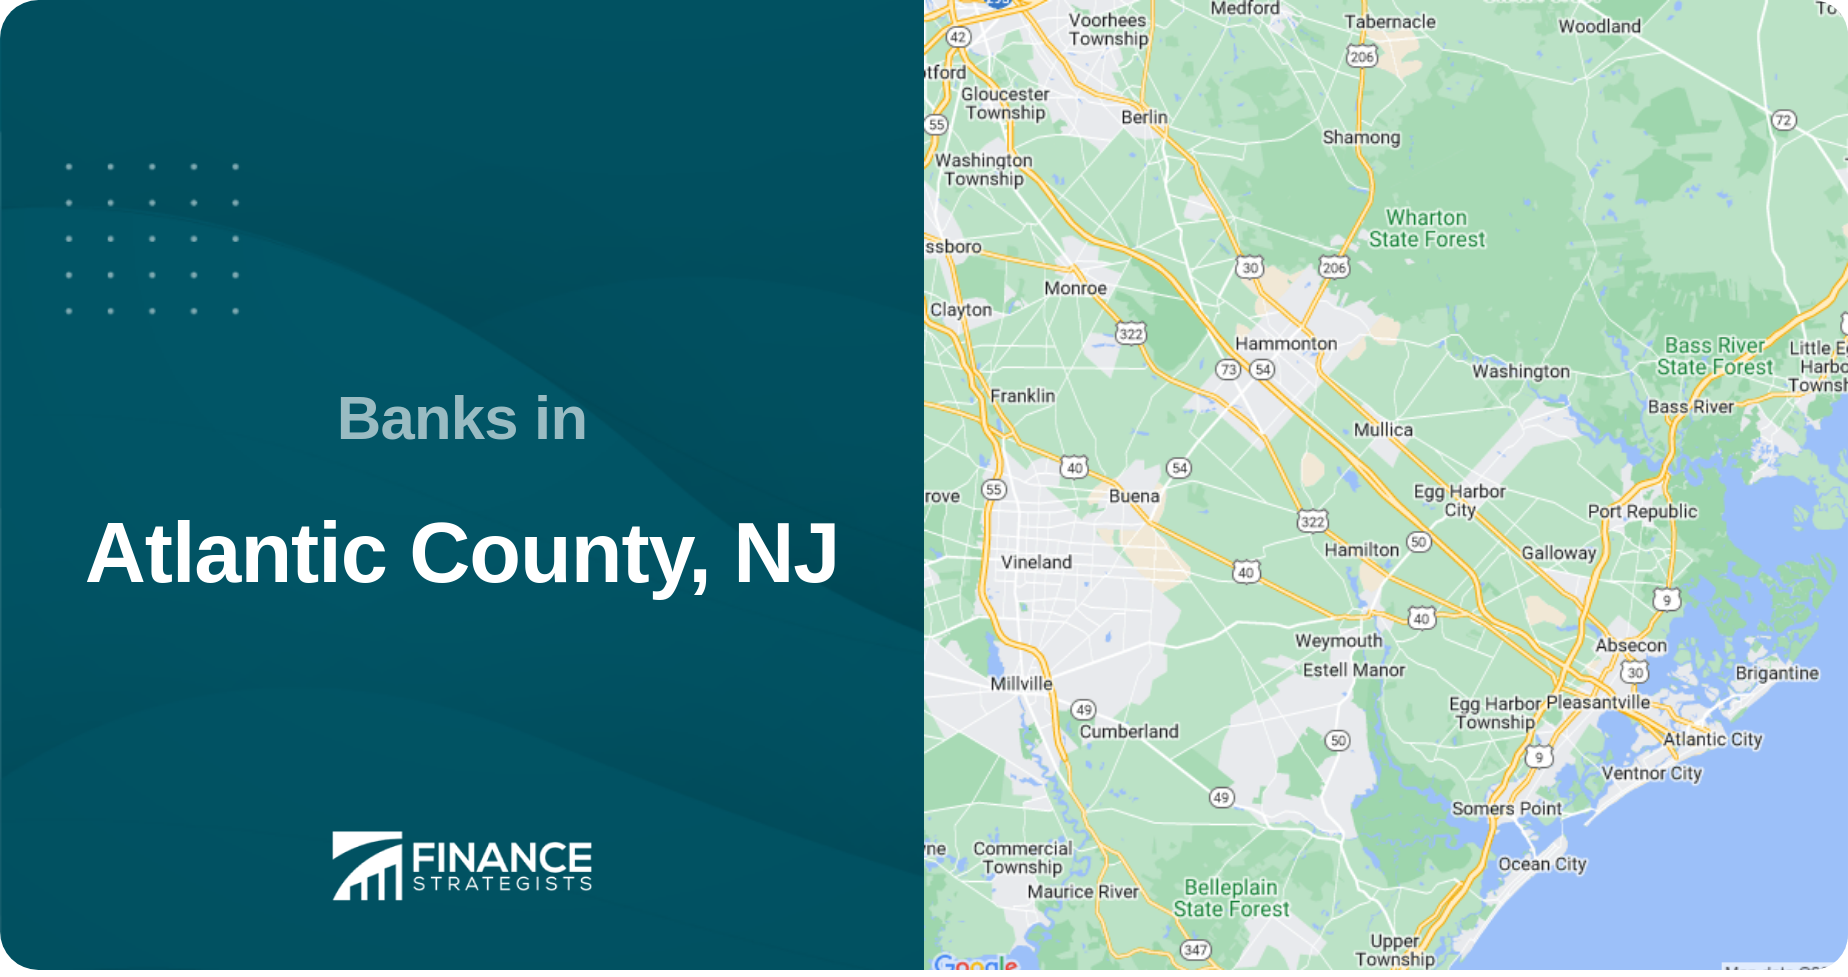 Banks in Atlantic County, NJ